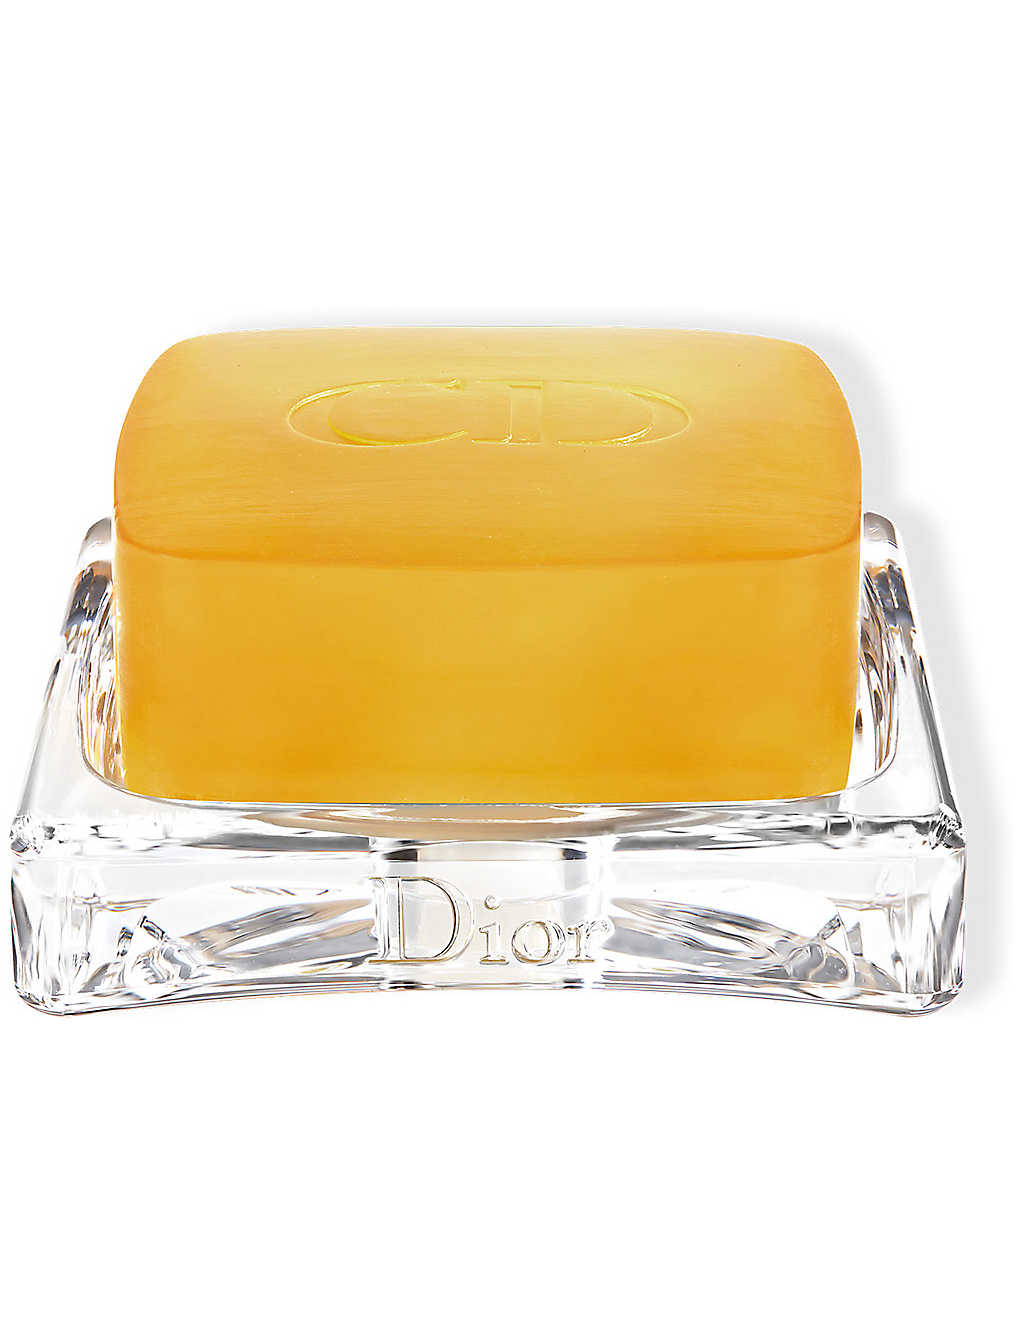 Dior Prestige Le Savon Bar Soap 110g